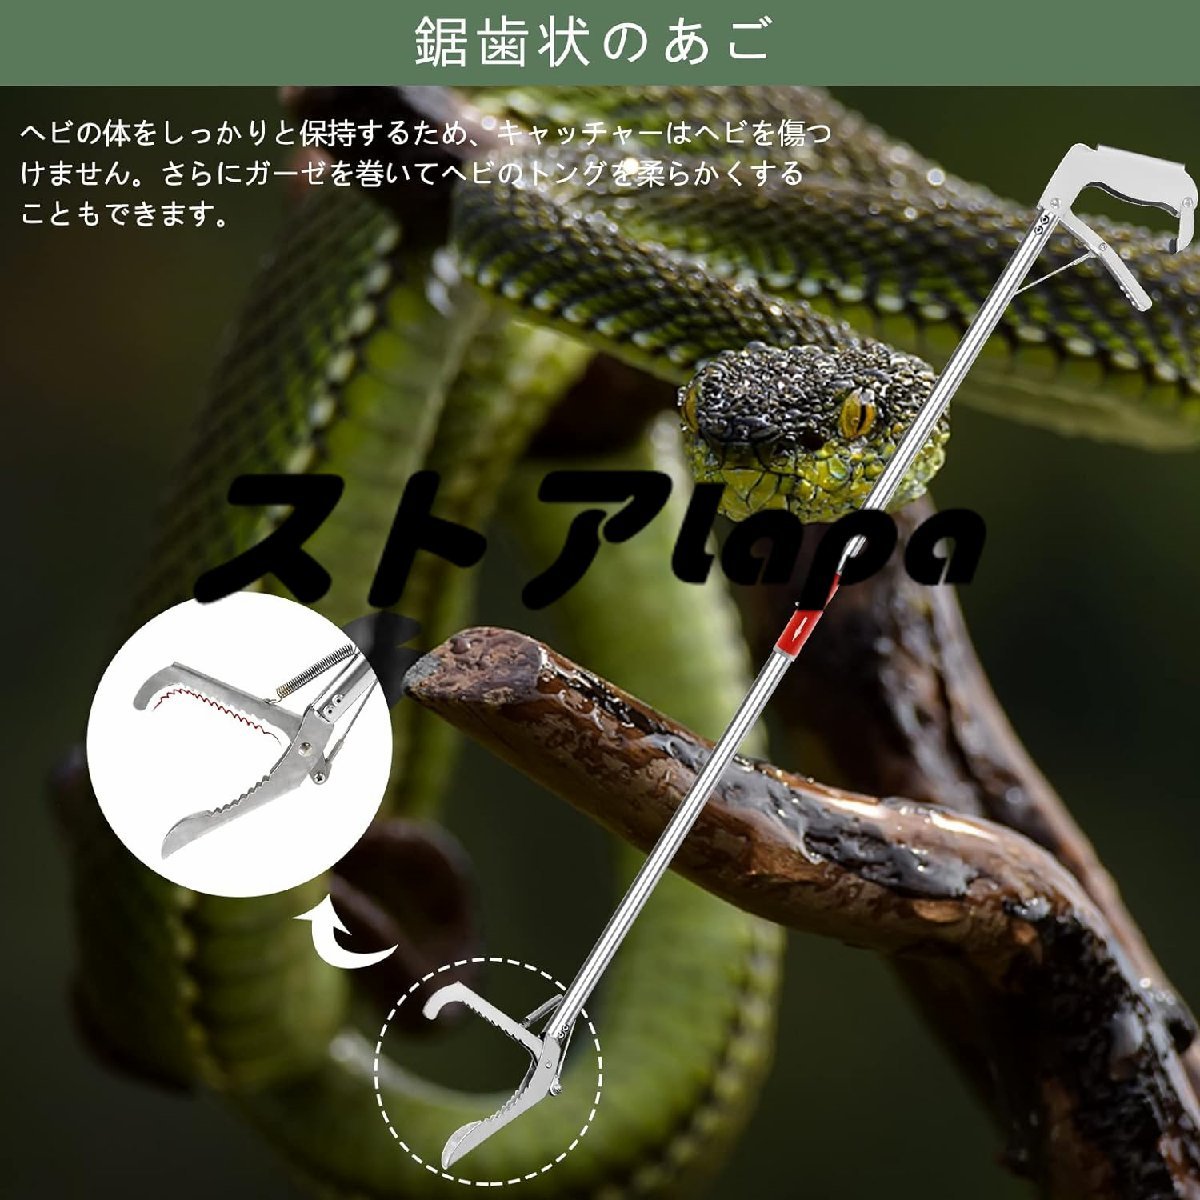 実用★ 折り畳み ヘビ捕獲棒 最長150cm ステンレス製折り畳み式 使いやすい ロック機能 爬虫類 ヘビ 蛇 捕獲器蛇取り棒 1.2m L1374の画像2